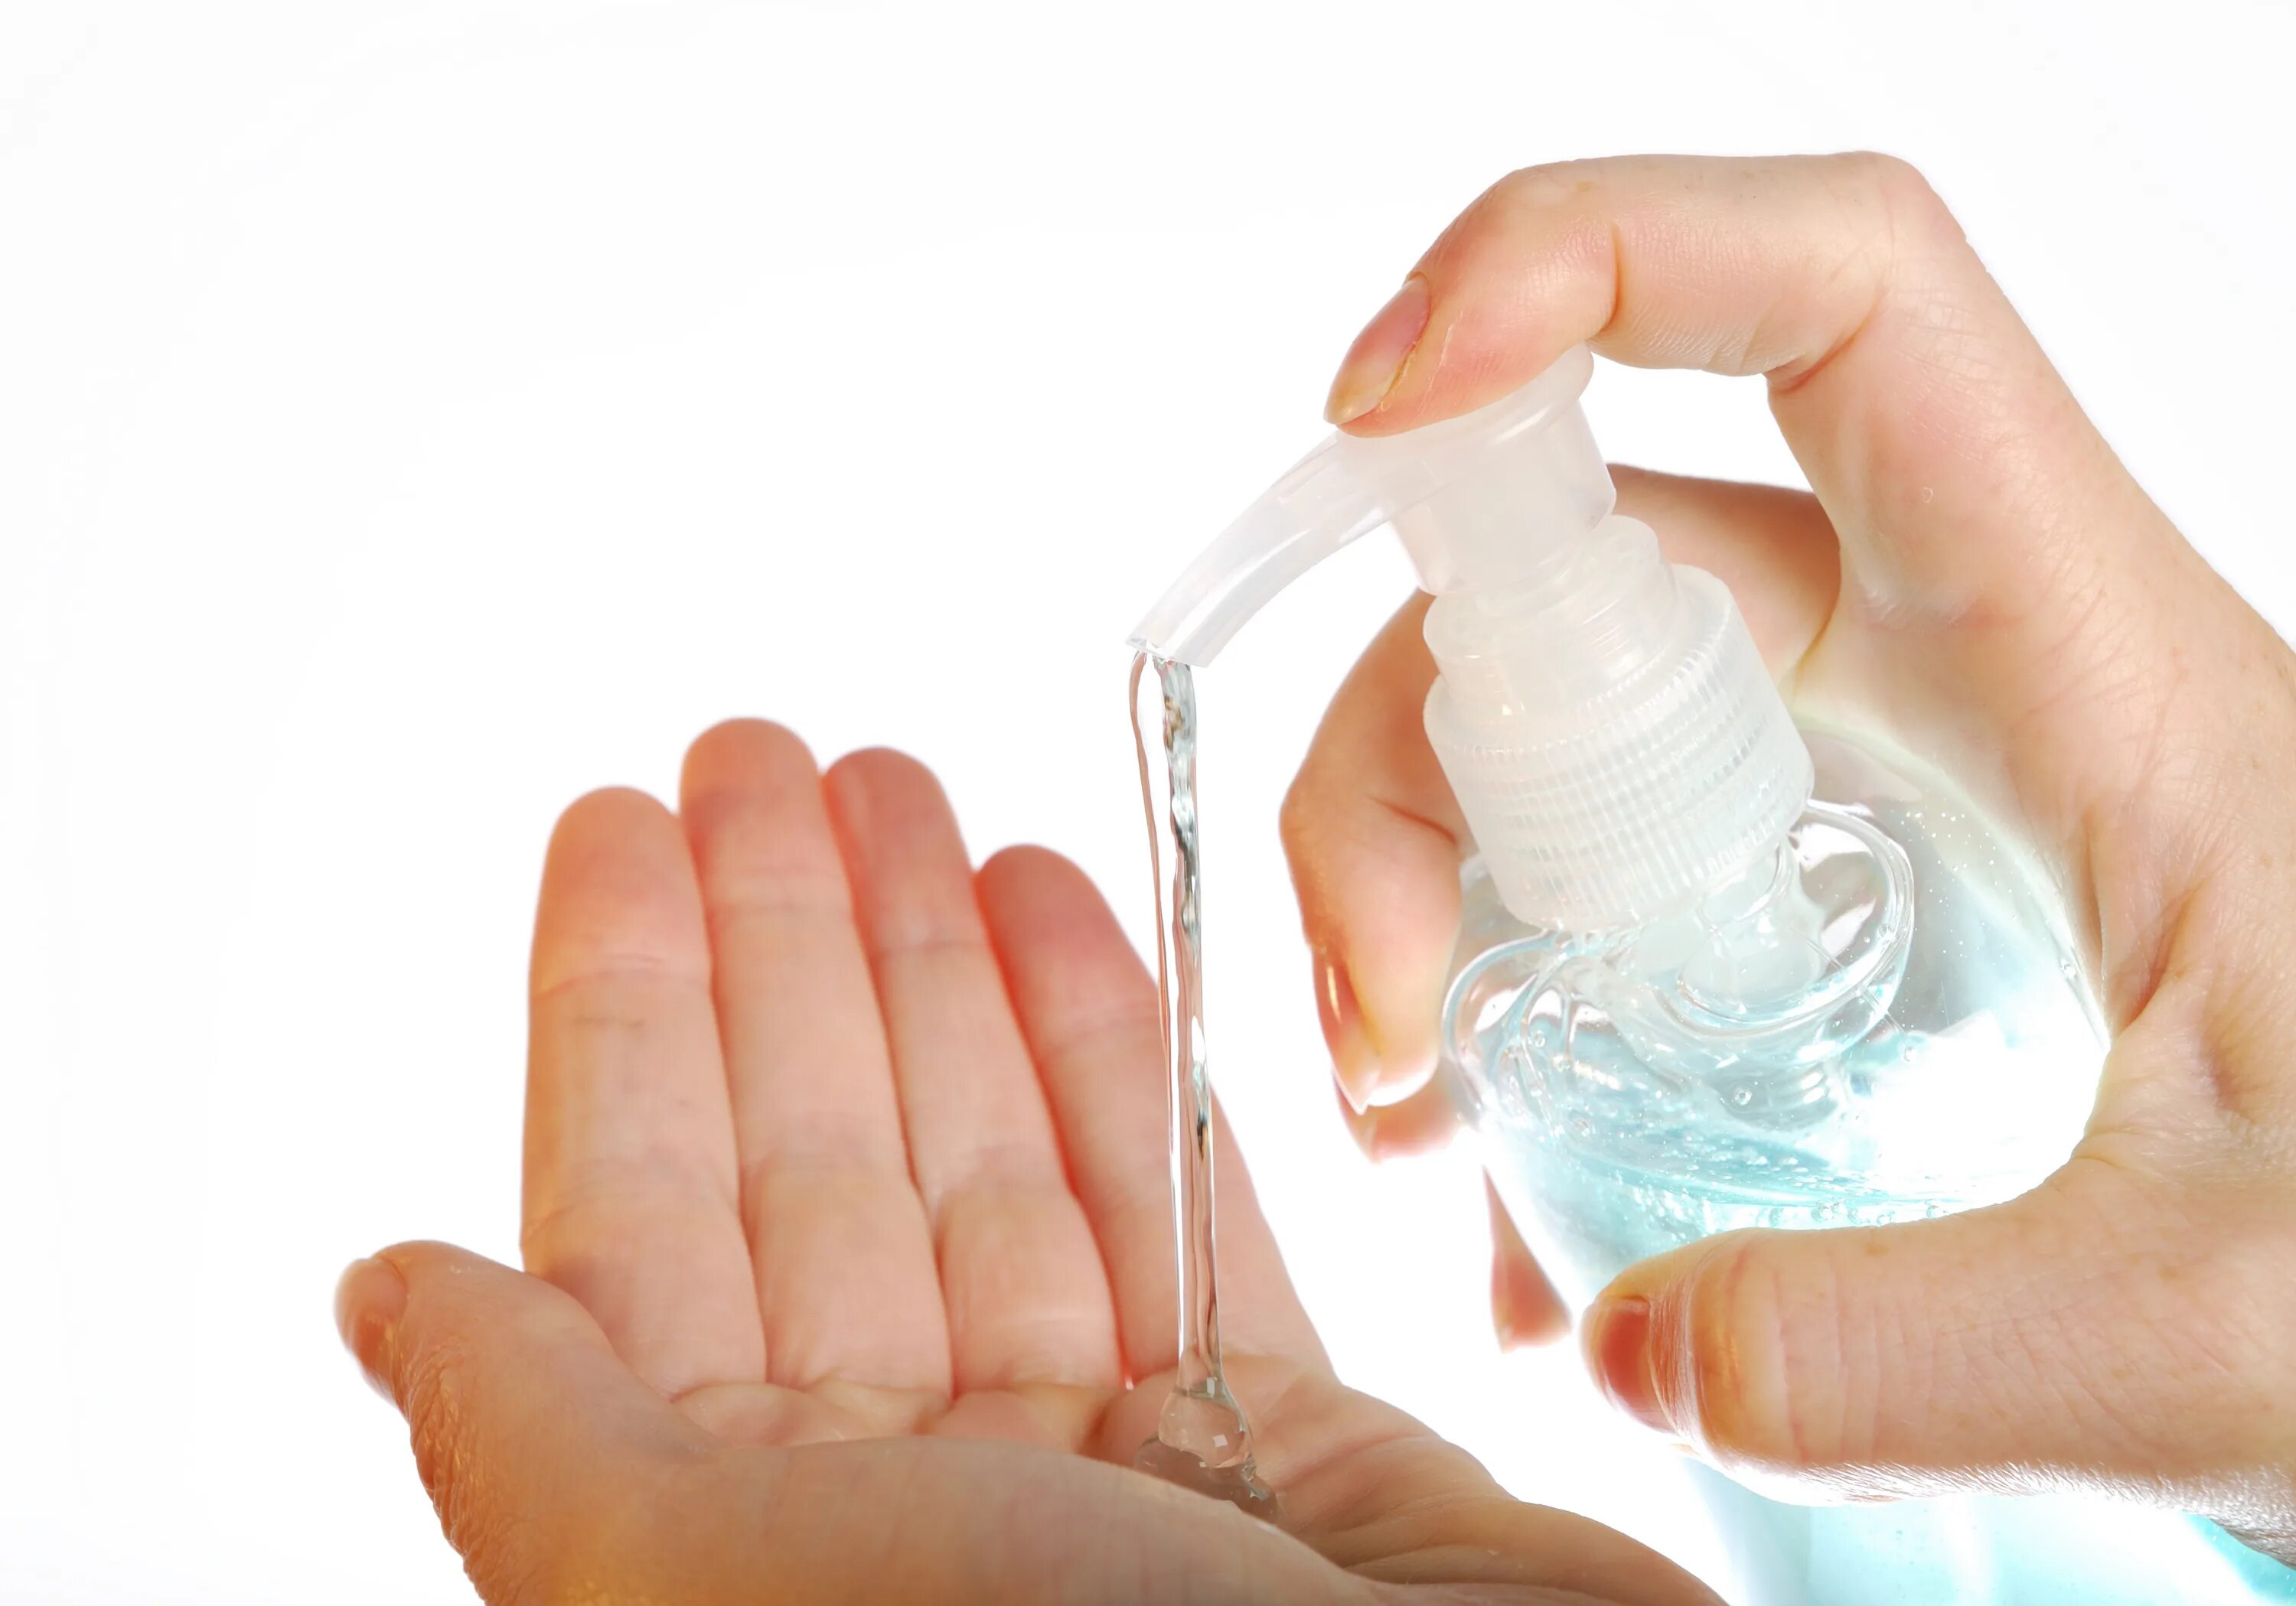 Жидкое мыло для рук. Прозрачный гель на руке. Жидкое мыло прозрачное. Выдавливает прозрачный гель на руку. Средство руками рецепт